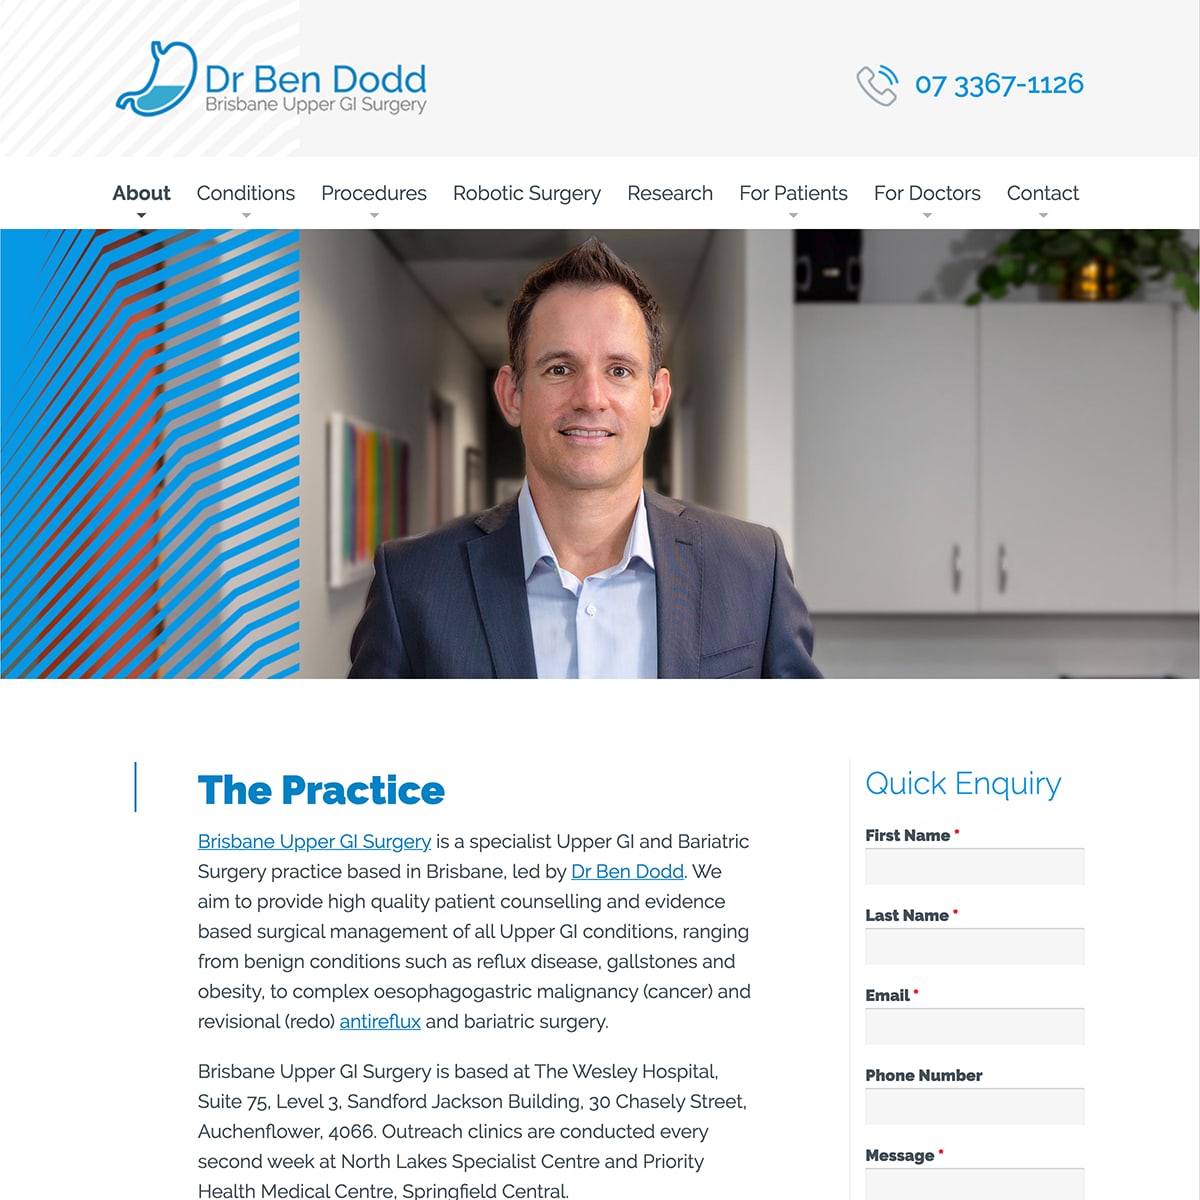 Dr Ben Dodd - The Practice